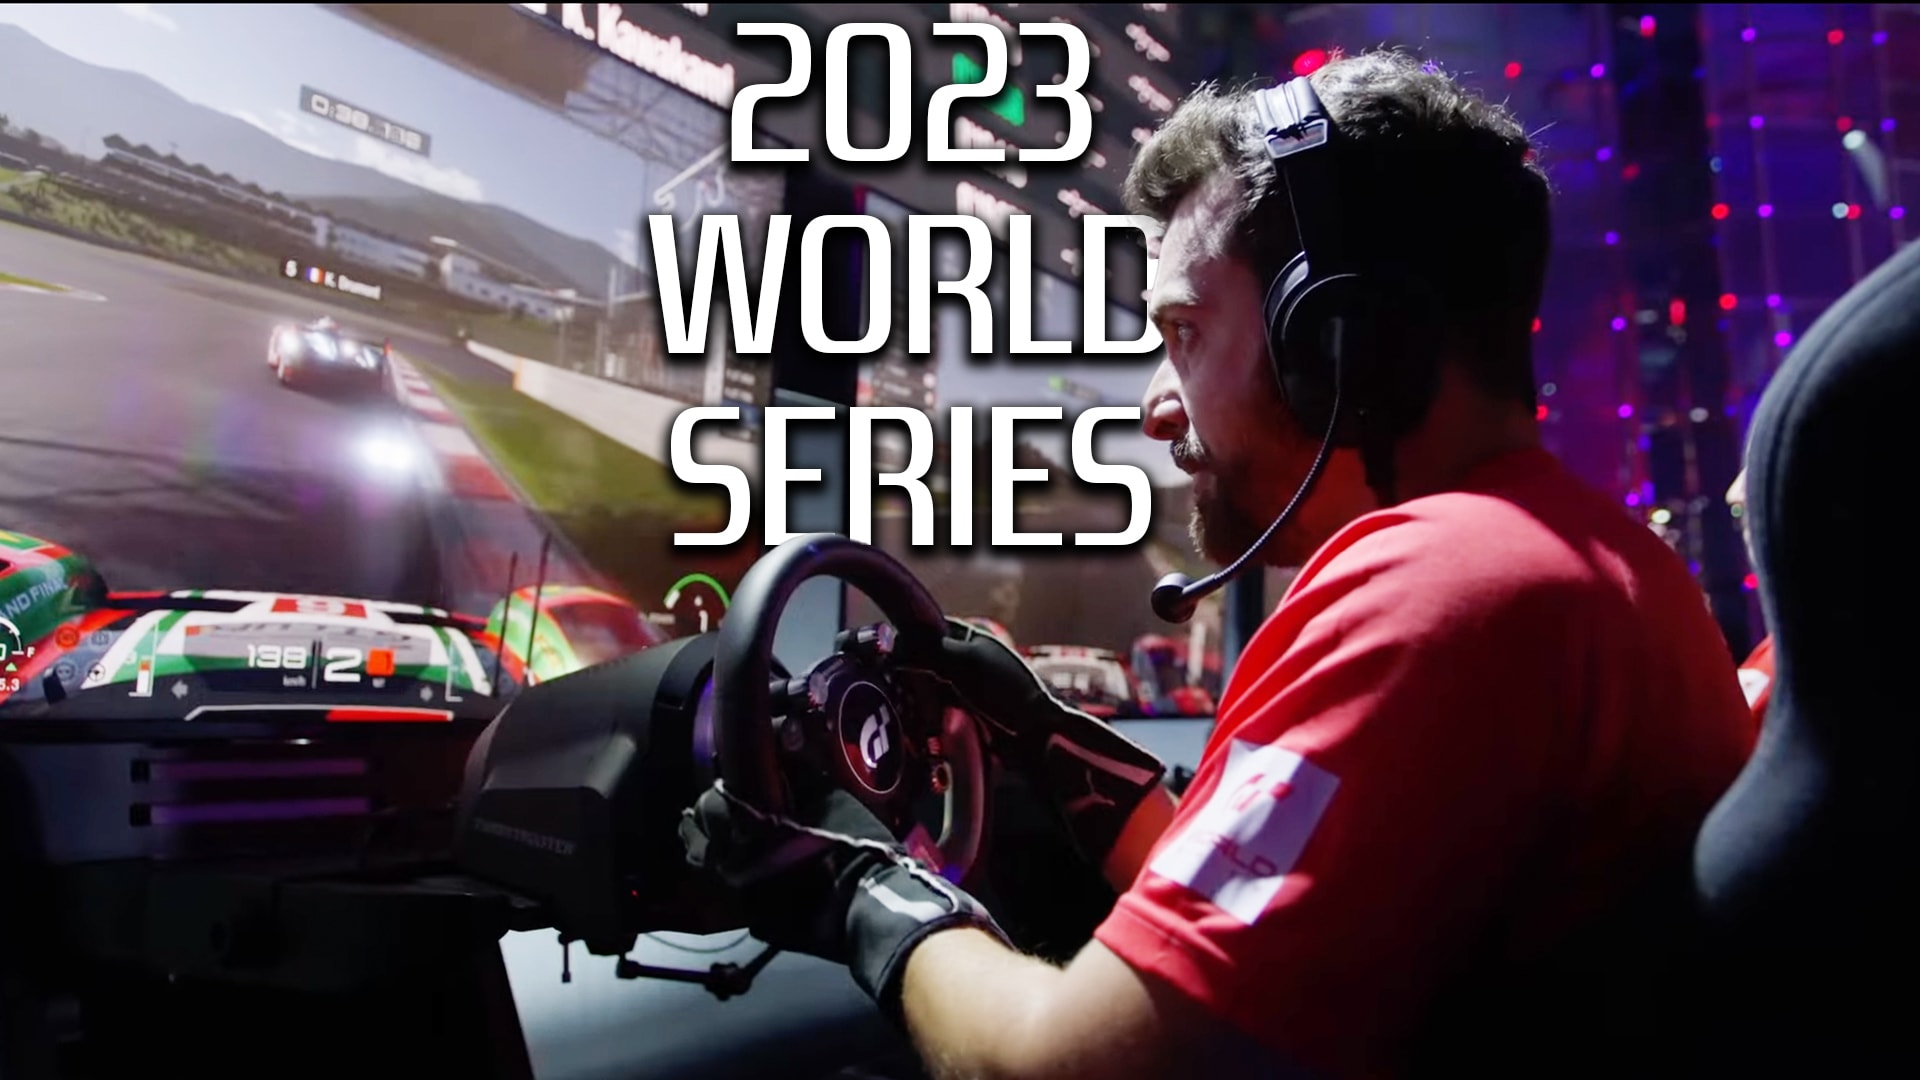 Visão geral da Gran Turismo World Series de 2023 